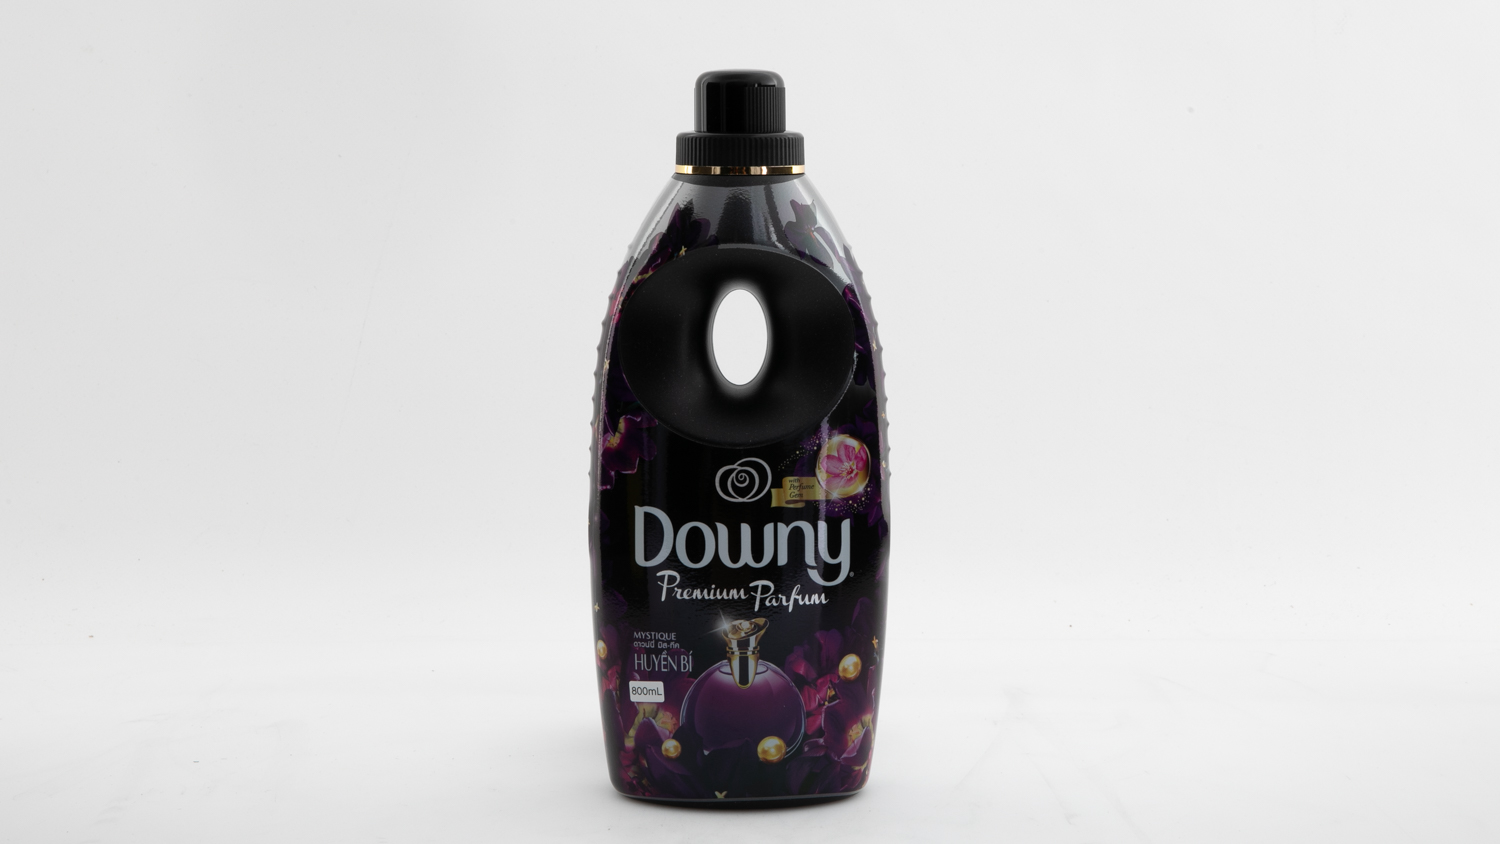 Downy Premium Parfum Mystique carousel image